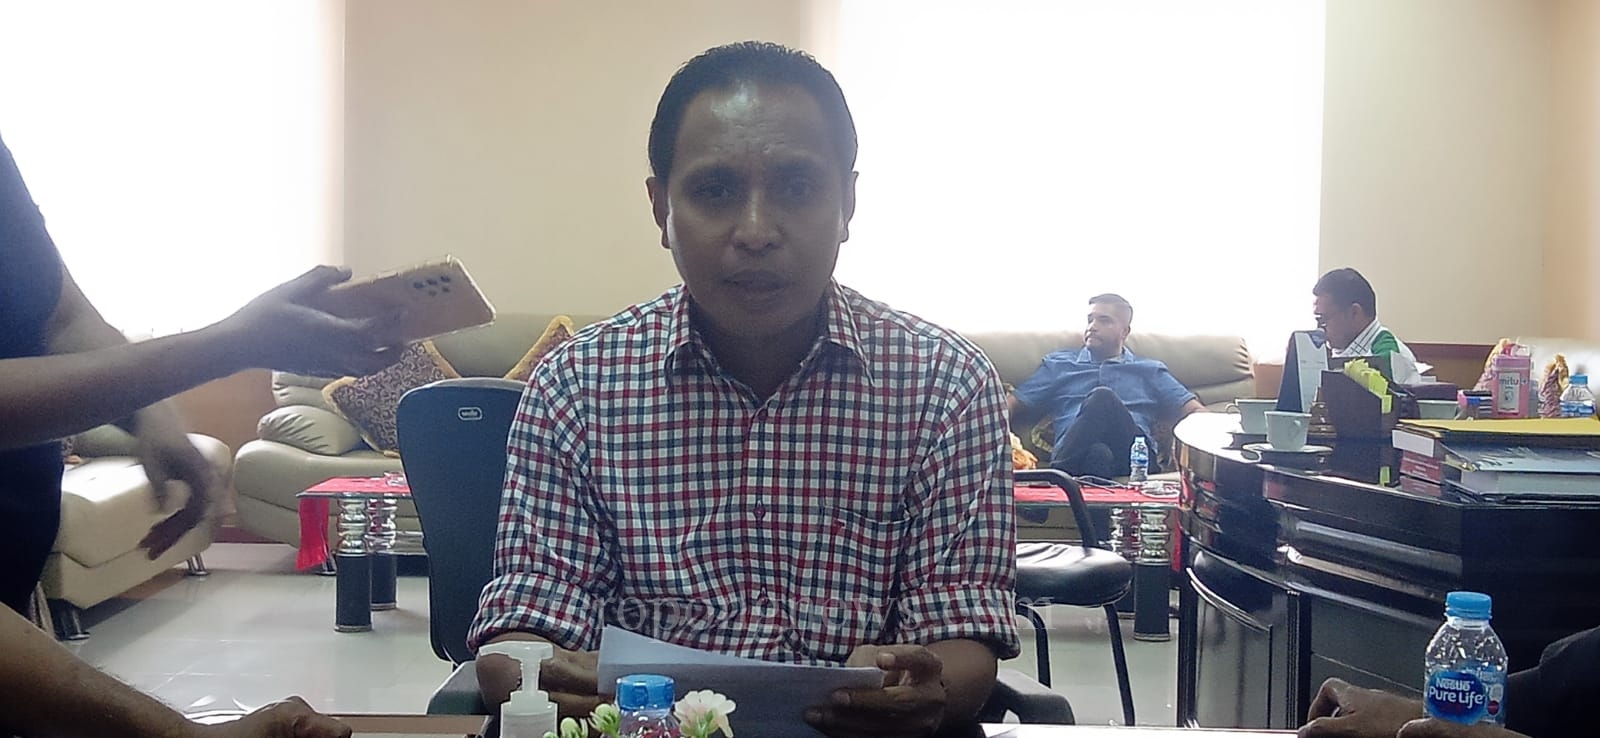 Pasca Kedatangan Dua Menteri, DPRD Harap Ada “Angin Segar” bagi Maluku